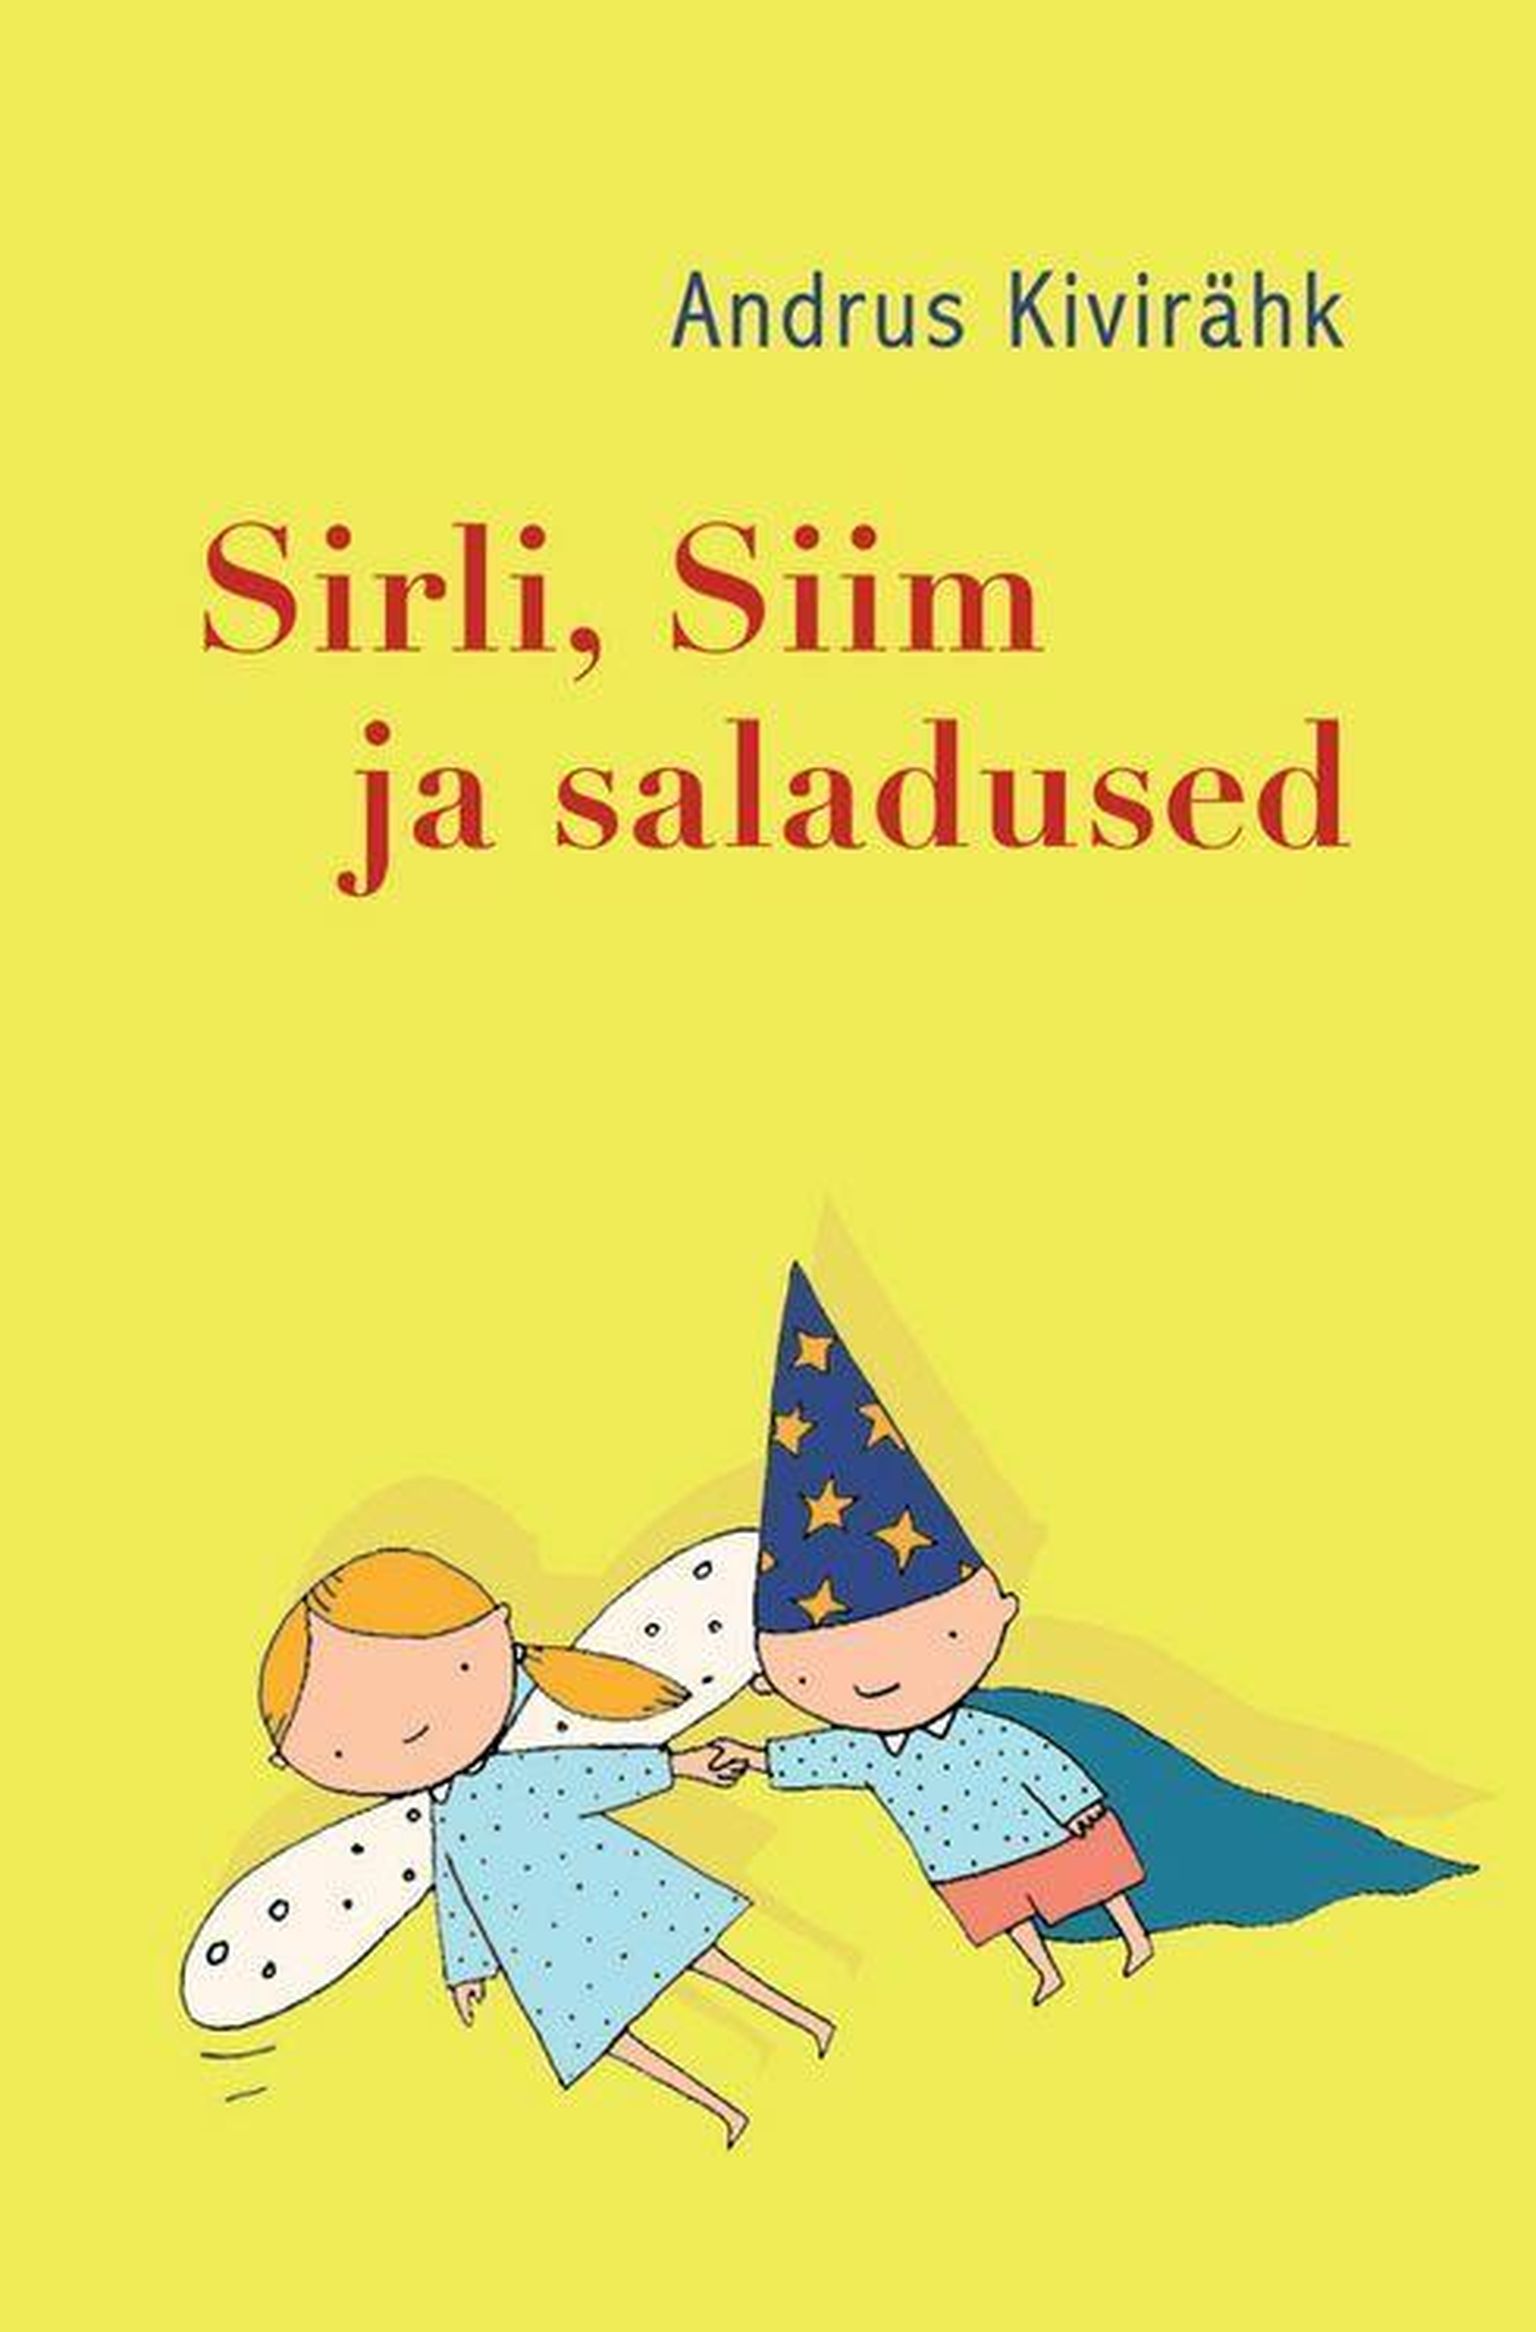 Tänavu loetakse üle maailma koos Andrus Kiviräha mõnusat lasteraamatut "Sirli, Siim ja saladused".